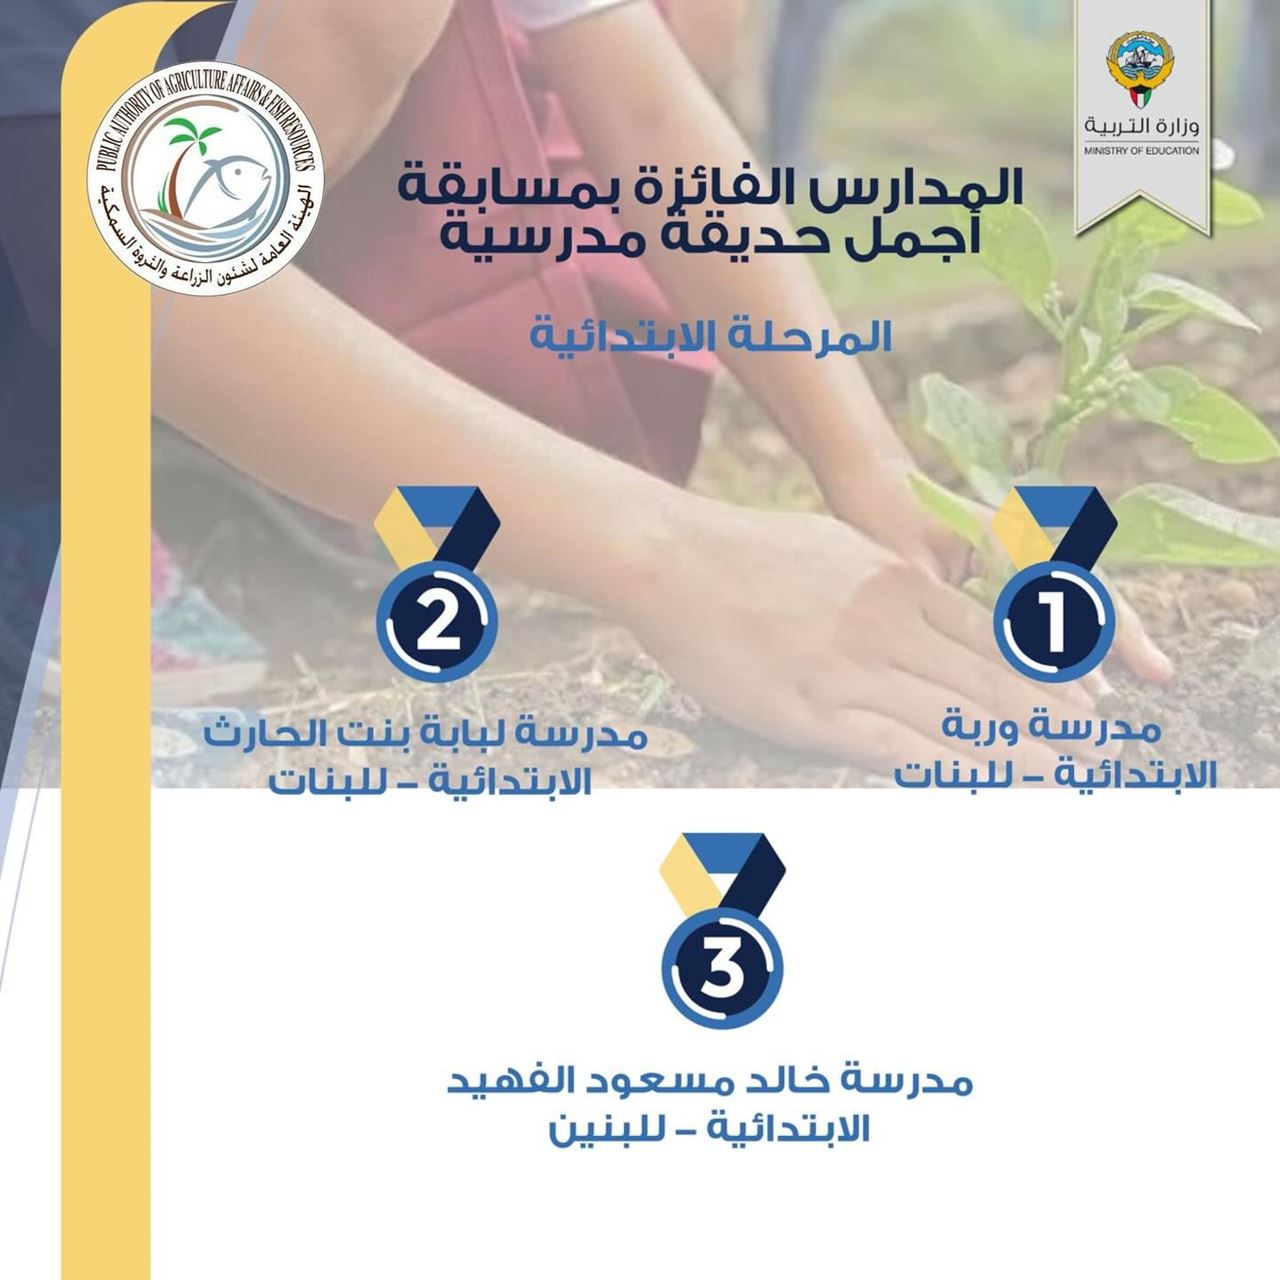 المدارس الفائزة بمسابقة "أجمل حديقة مدرسية" في الكويت